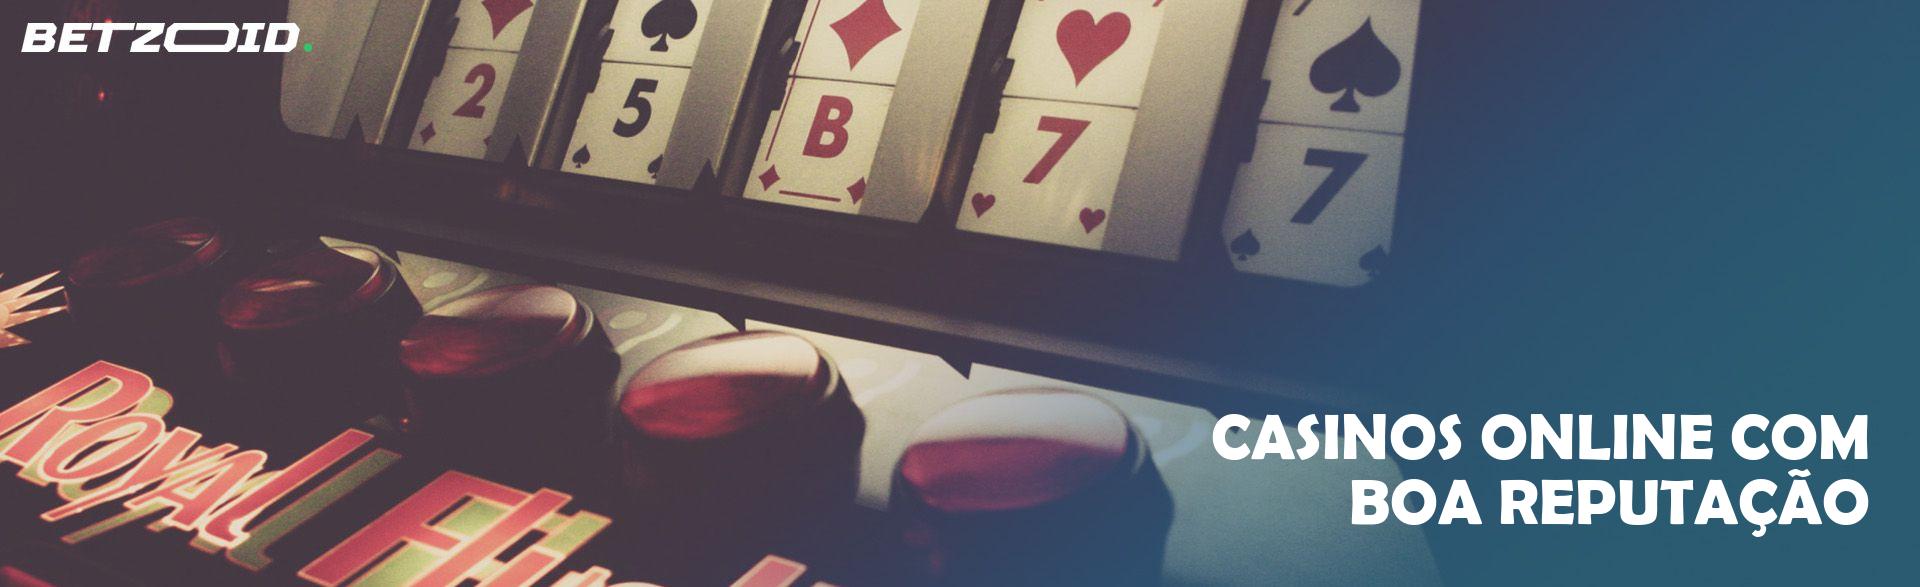 Casinos Online com Boa Reputação.